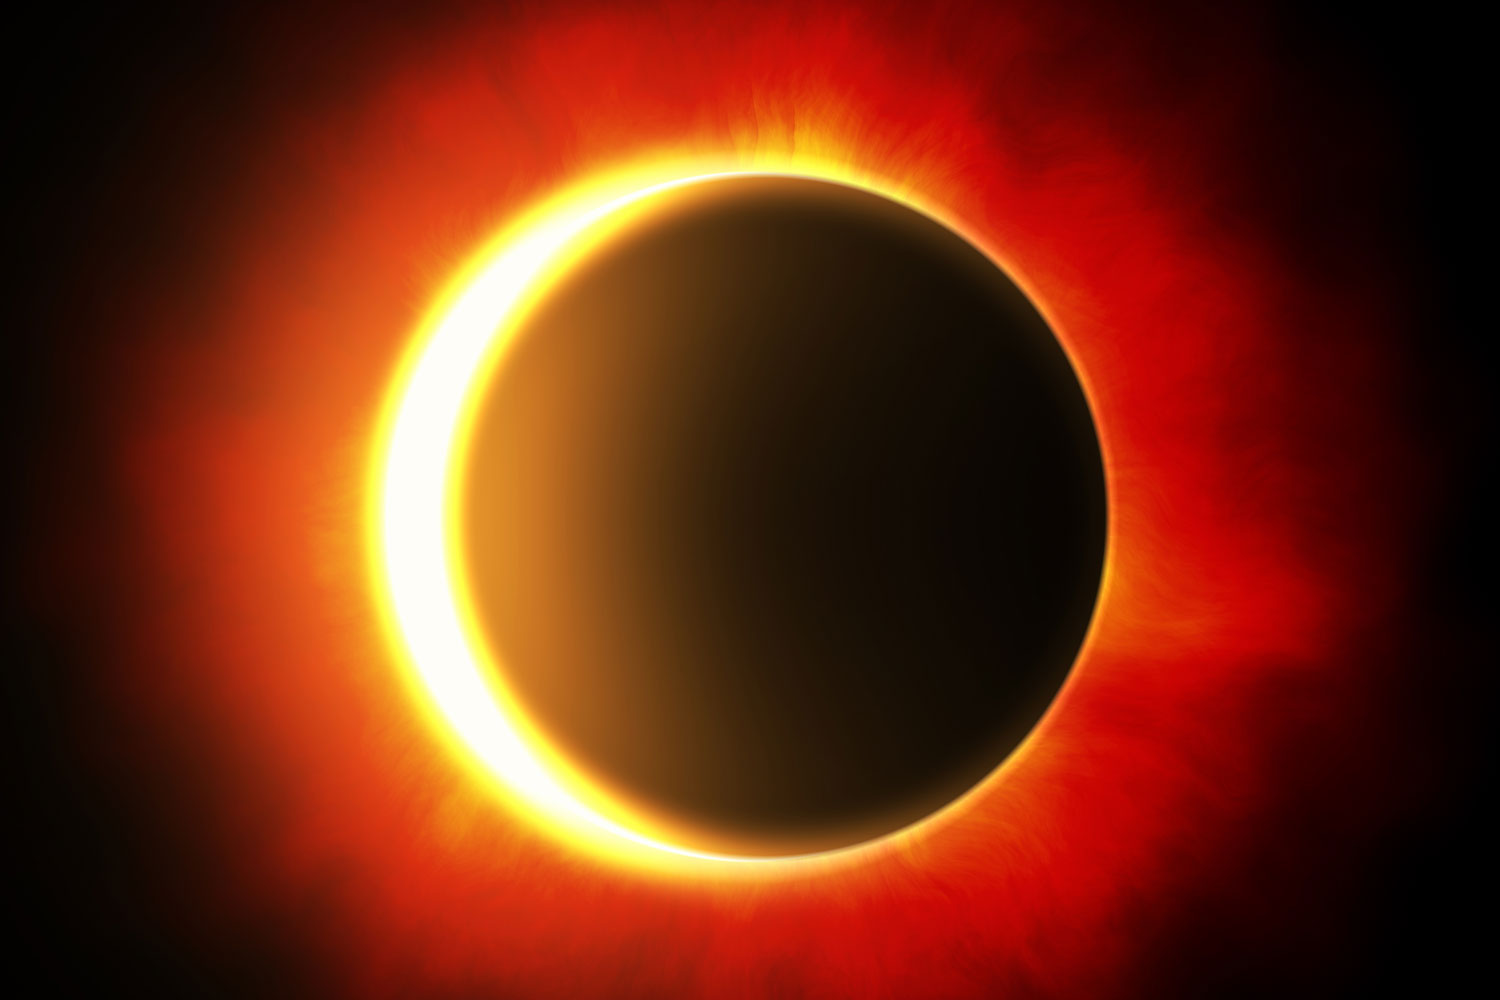 NASA-farkost förevigar solförmörkelse i rymden | Illvet.se